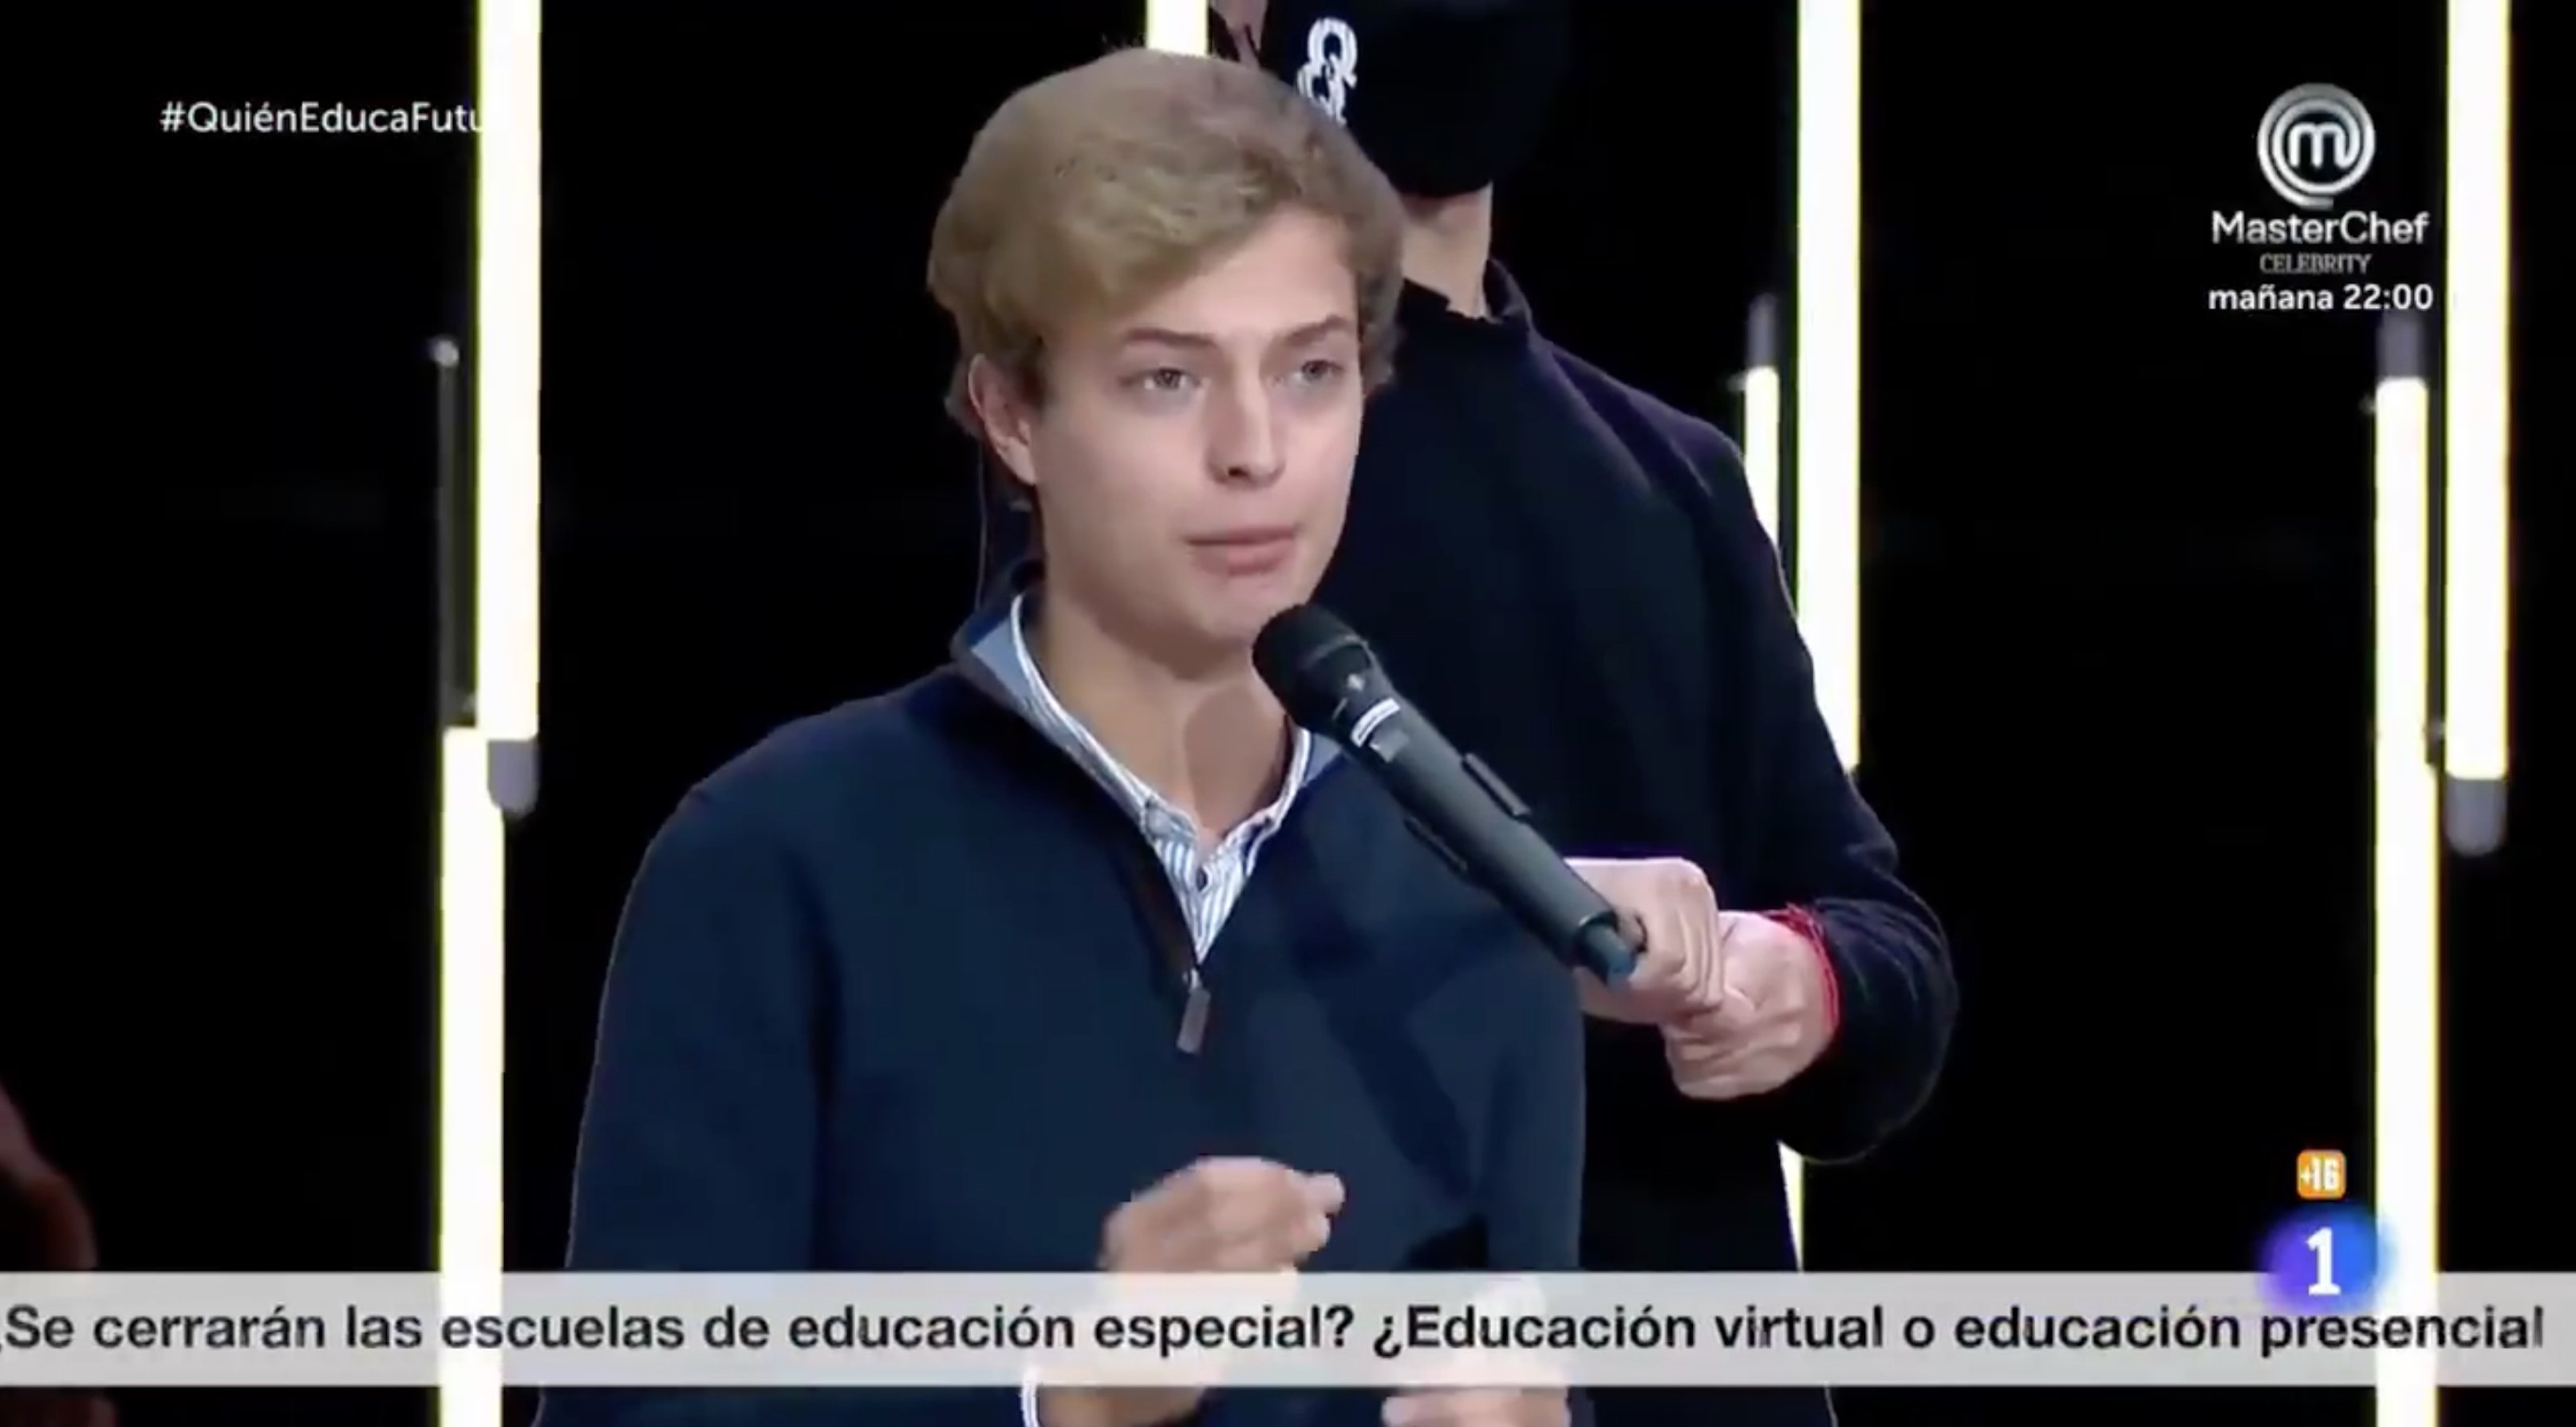 Qué hace ahora el estudiante del "En Catalunya no te atienden si hablas en castellano"